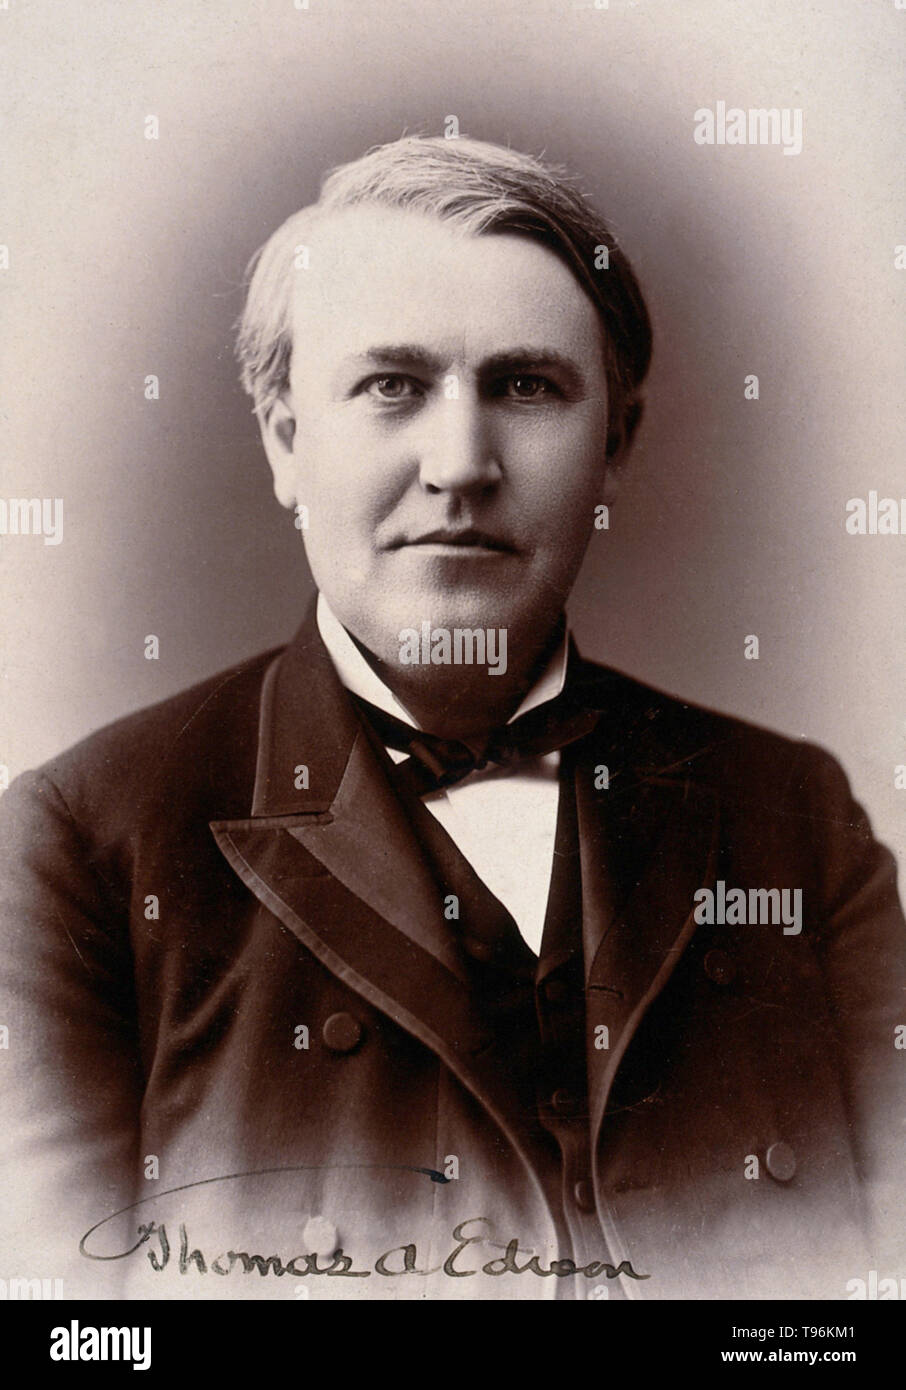 Thomas Alva Edison (11 février 1847 - 18 octobre 1931) était un inventeur américain et homme d'affaires. Il a développé de nombreux dispositifs qui a grandement influencé la vie à travers le monde, y compris le phonographe, l'appareil photo, et une longue pratique, l'ampoule électrique. Il a été l'un des premiers inventeurs d'appliquer les principes de la production de masse et d'équipe avec les grands processus d'invention, et donc est souvent crédité de la création du premier laboratoire de recherche industriel. Banque D'Images